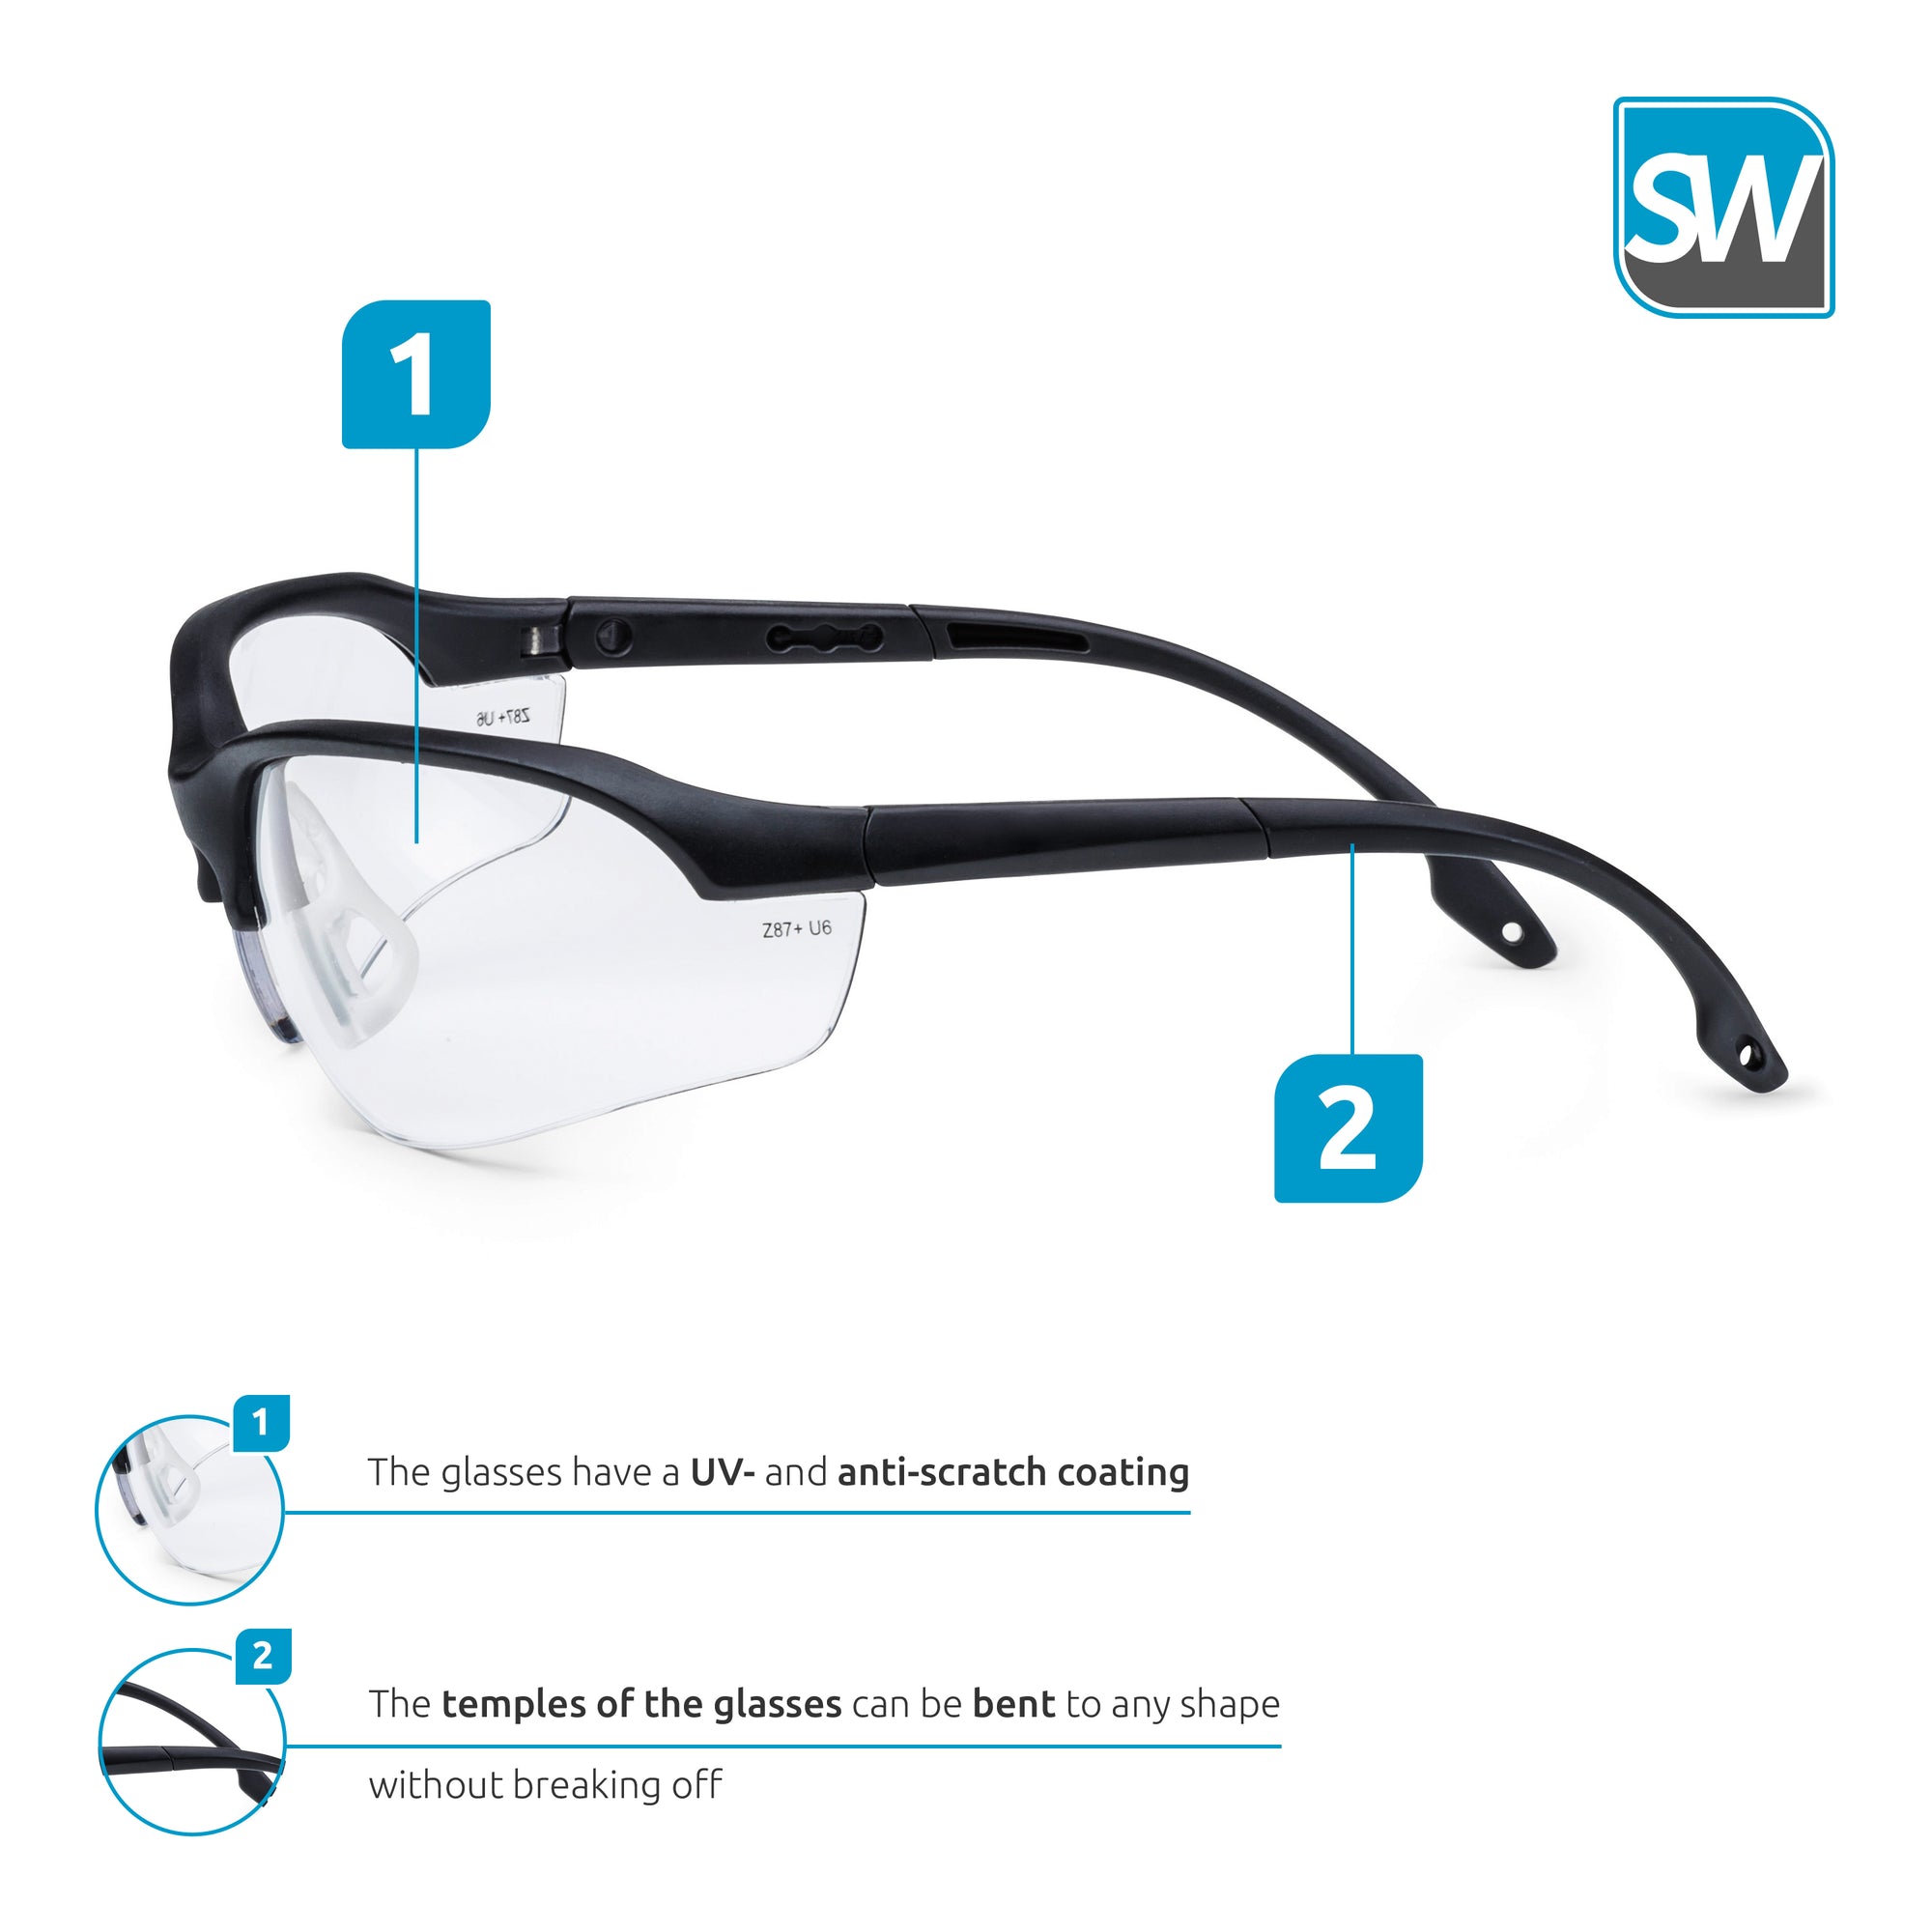 Anti-Scratch Safety Glasses